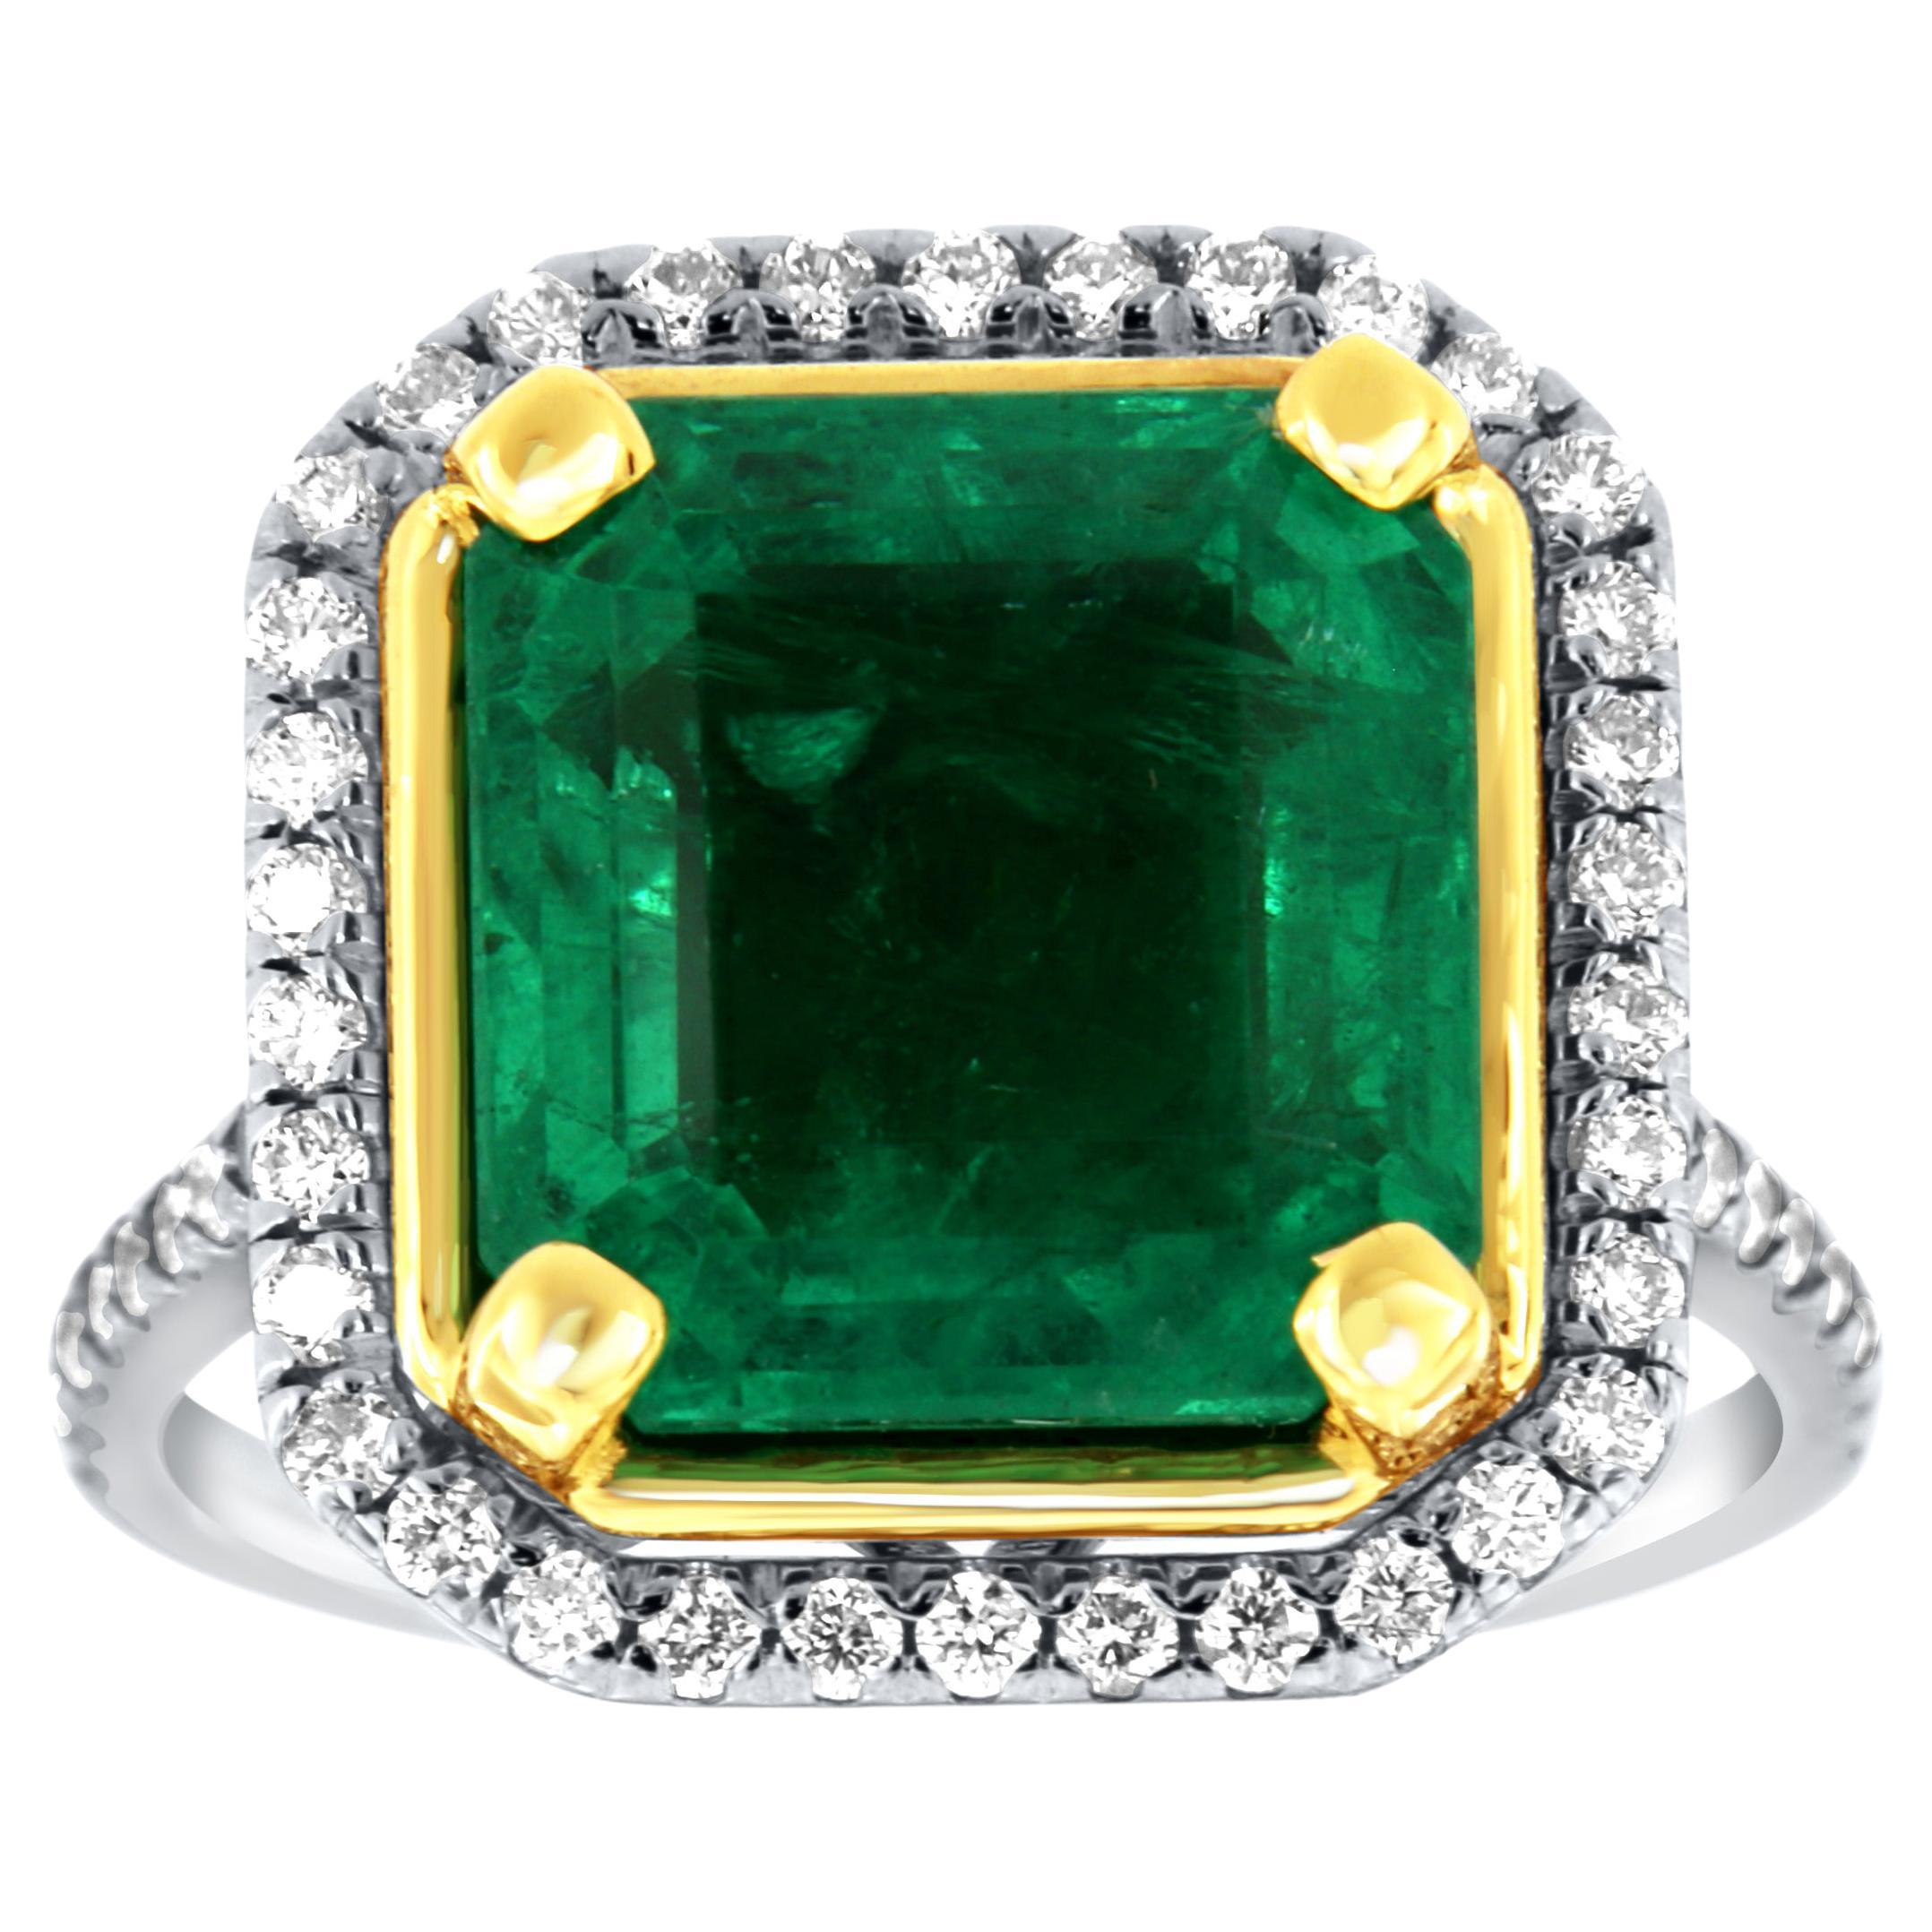 Bague halo de diamants en or blanc et jaune 18 carats avec émeraude verte de 6,09 carats certifiée par le GIA